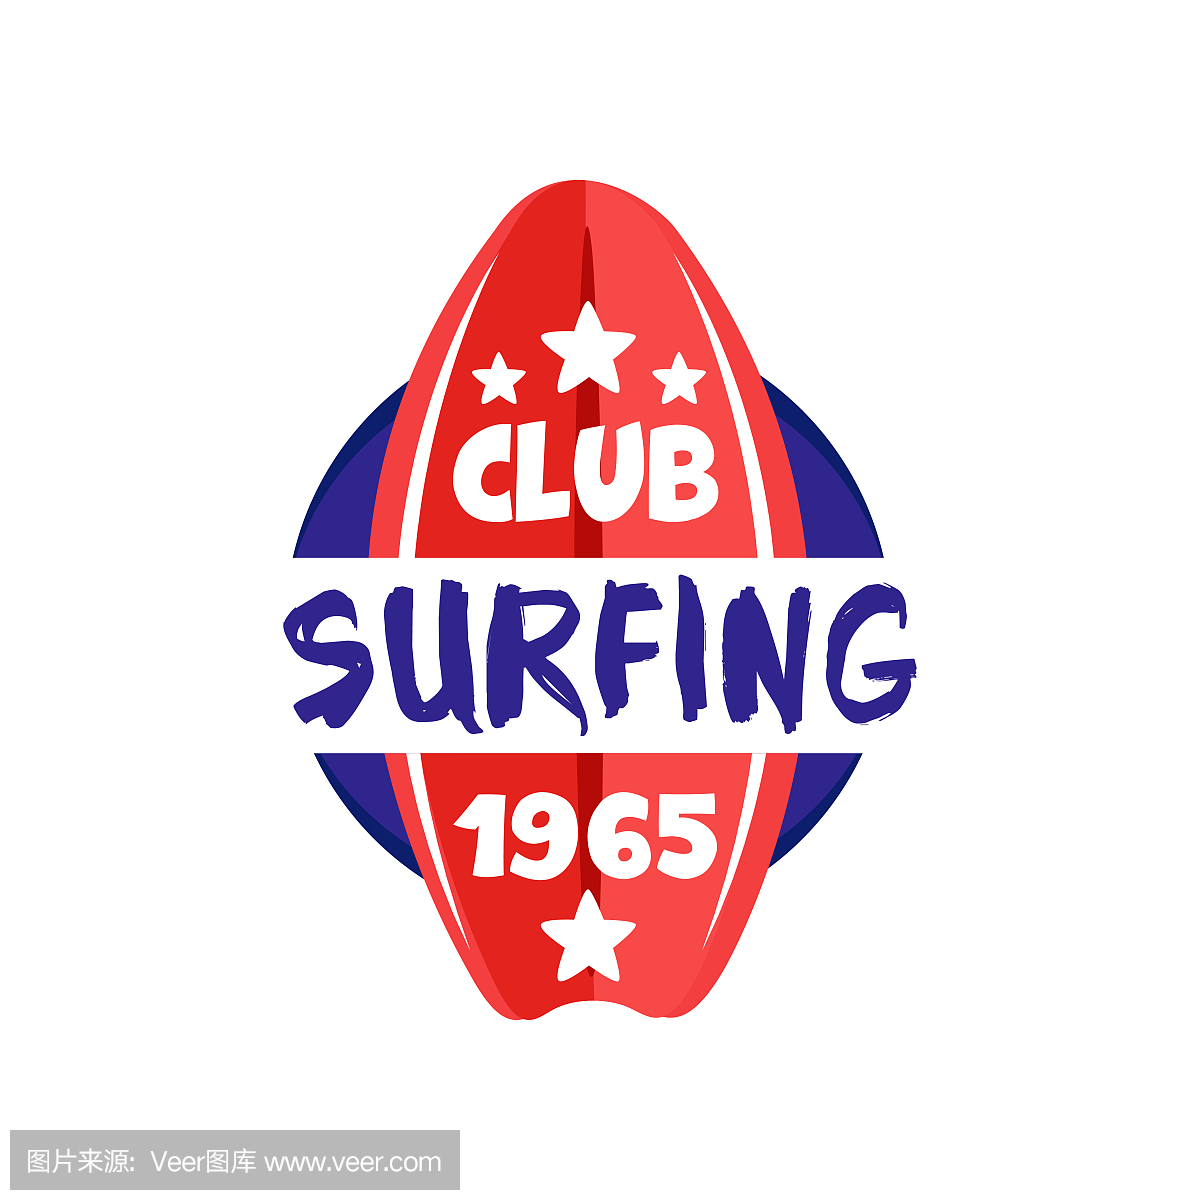 冲浪俱乐部徽标estd 1965年,冲浪学校,海滩休息